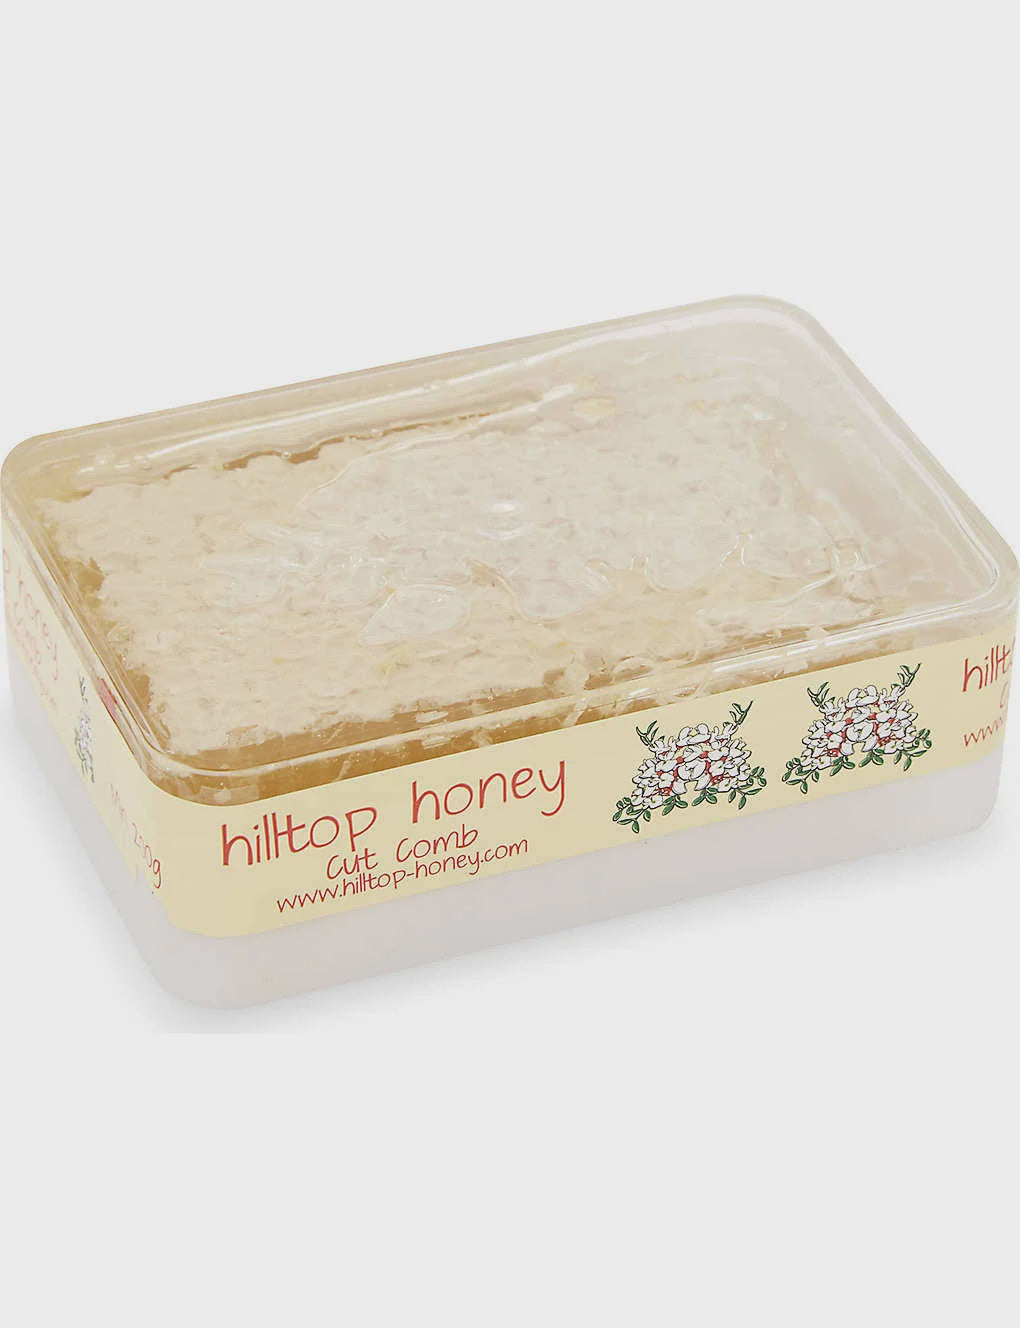 Hilltop Cut Comb Honey 200g